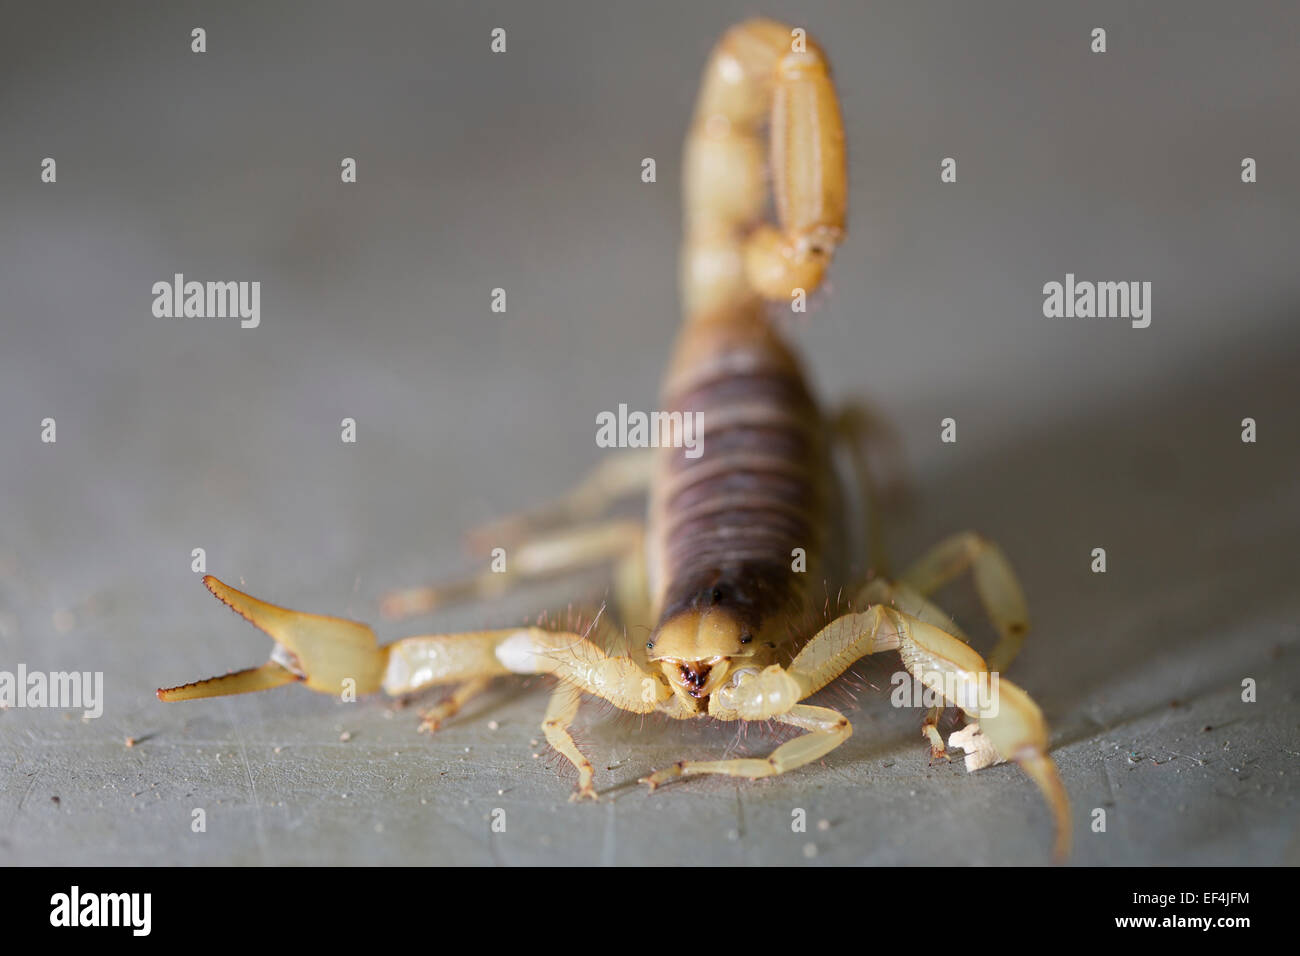 Wildlife : Desert hairy scorpion – 'Hadrurus arizonensis'. Stock Photo